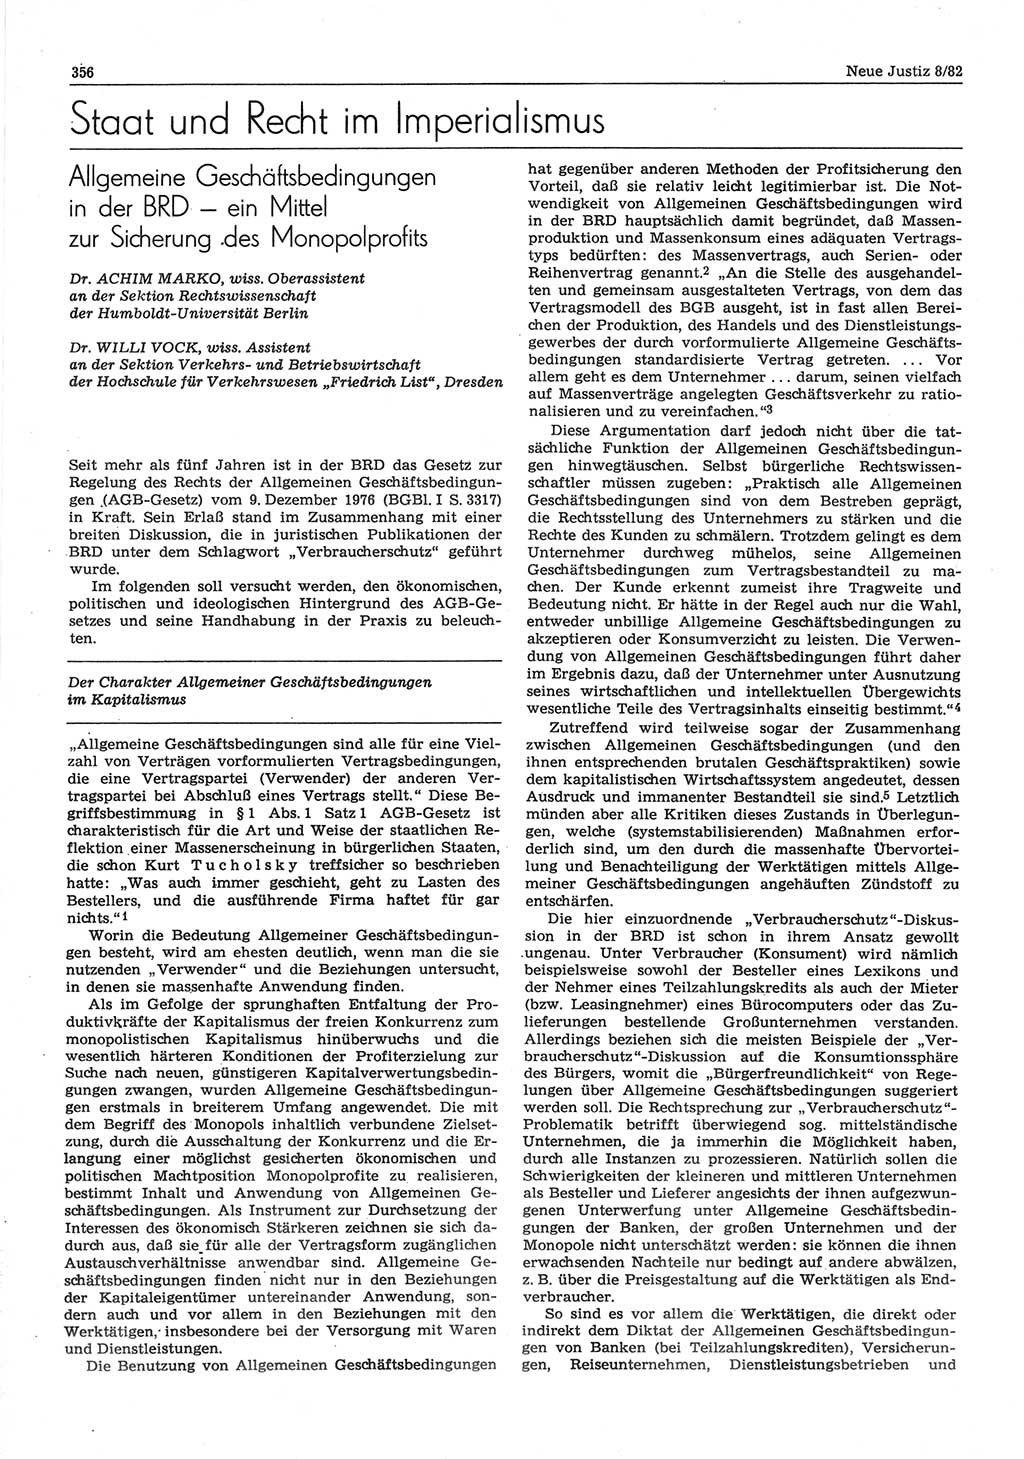 Neue Justiz (NJ), Zeitschrift für sozialistisches Recht und Gesetzlichkeit [Deutsche Demokratische Republik (DDR)], 36. Jahrgang 1982, Seite 356 (NJ DDR 1982, S. 356)